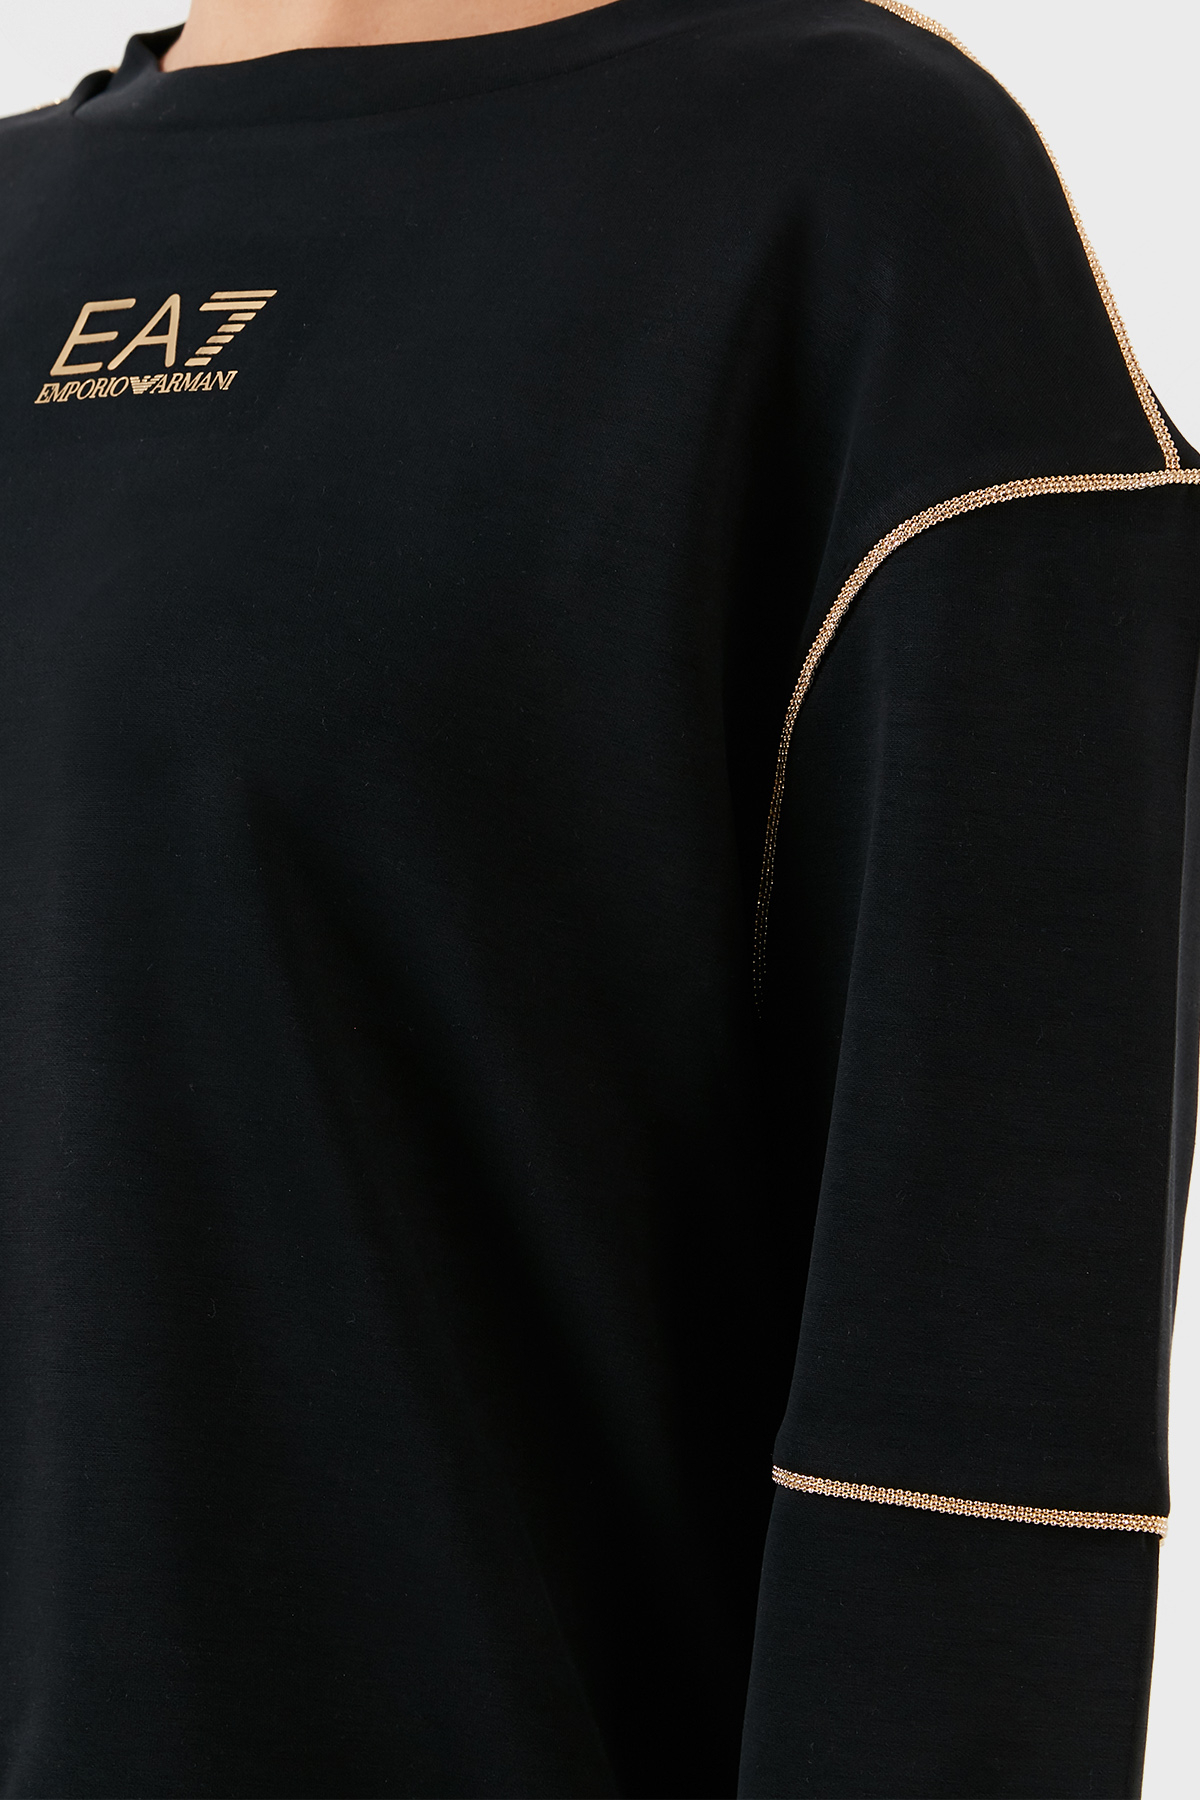 EA7 Logo Detaylı Regular Fit Bisiklet Yaka Bayan Sweat 6LTM24 TJGEZ 1200 SİYAH